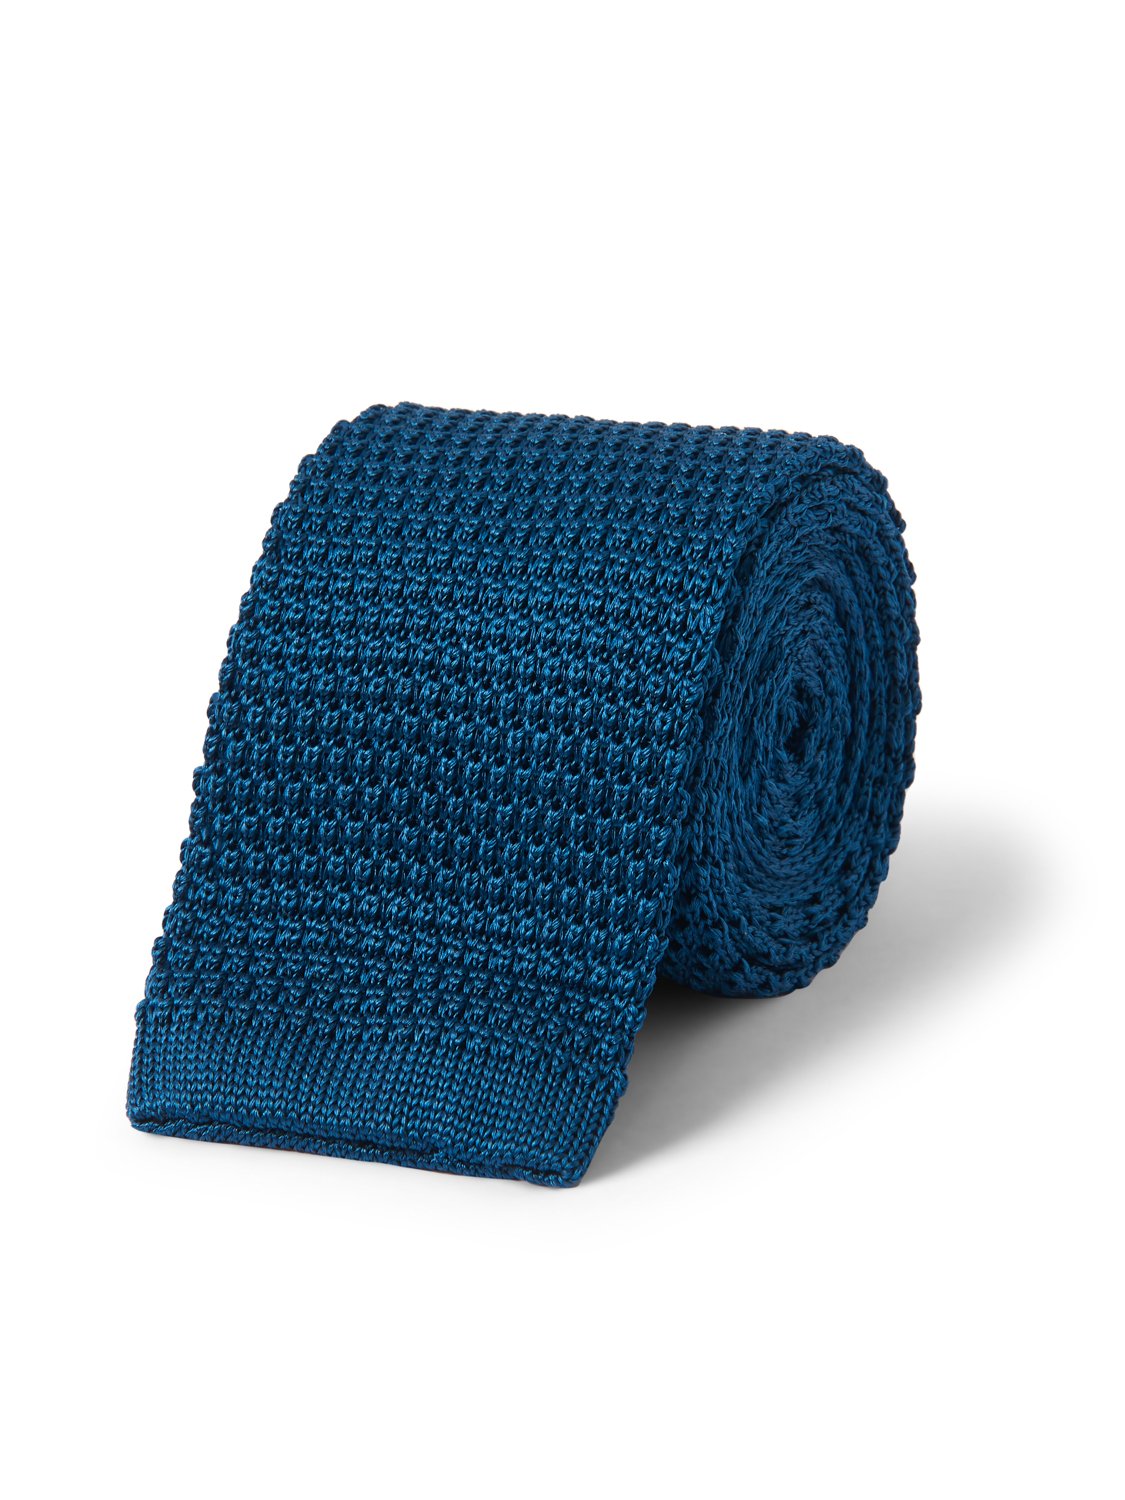 Kilgour Savile Row Tailoring Kilgour Knitted Silk Tie Blue